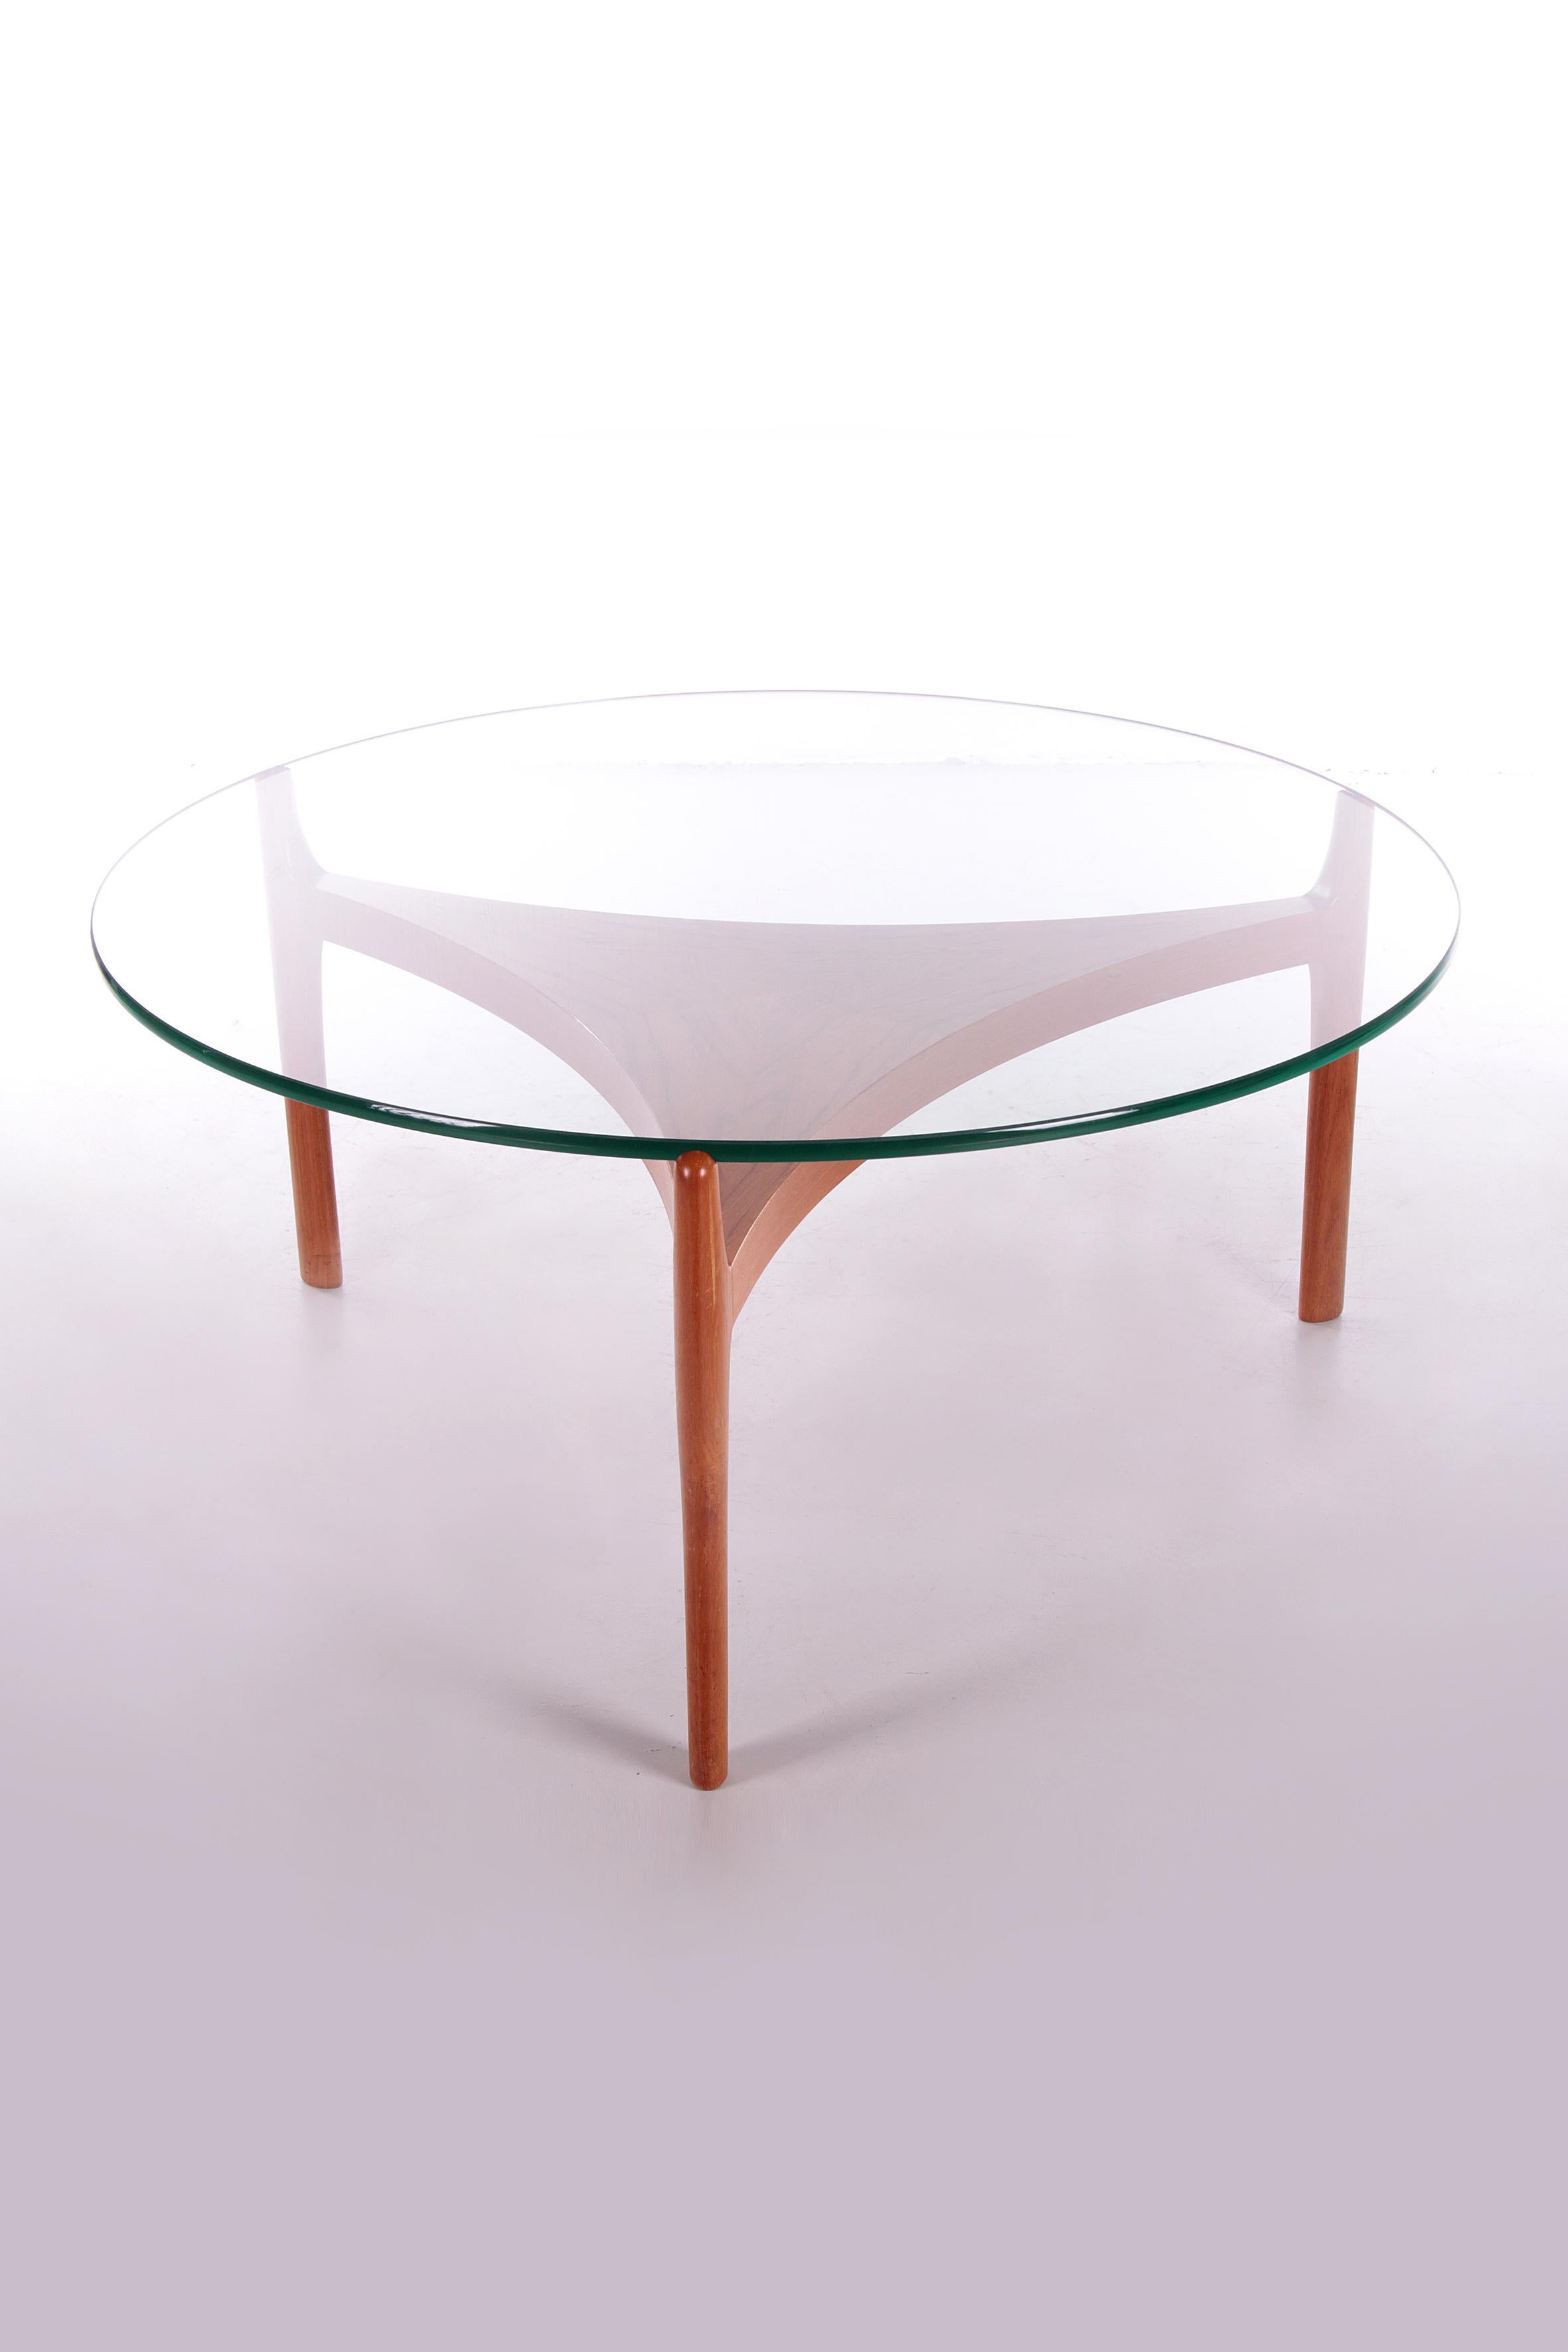 Mid-Century Modern Danish Teak Coffee Table by Sven Ellekaer for Christiaan Linneberg, 1960s For Sale